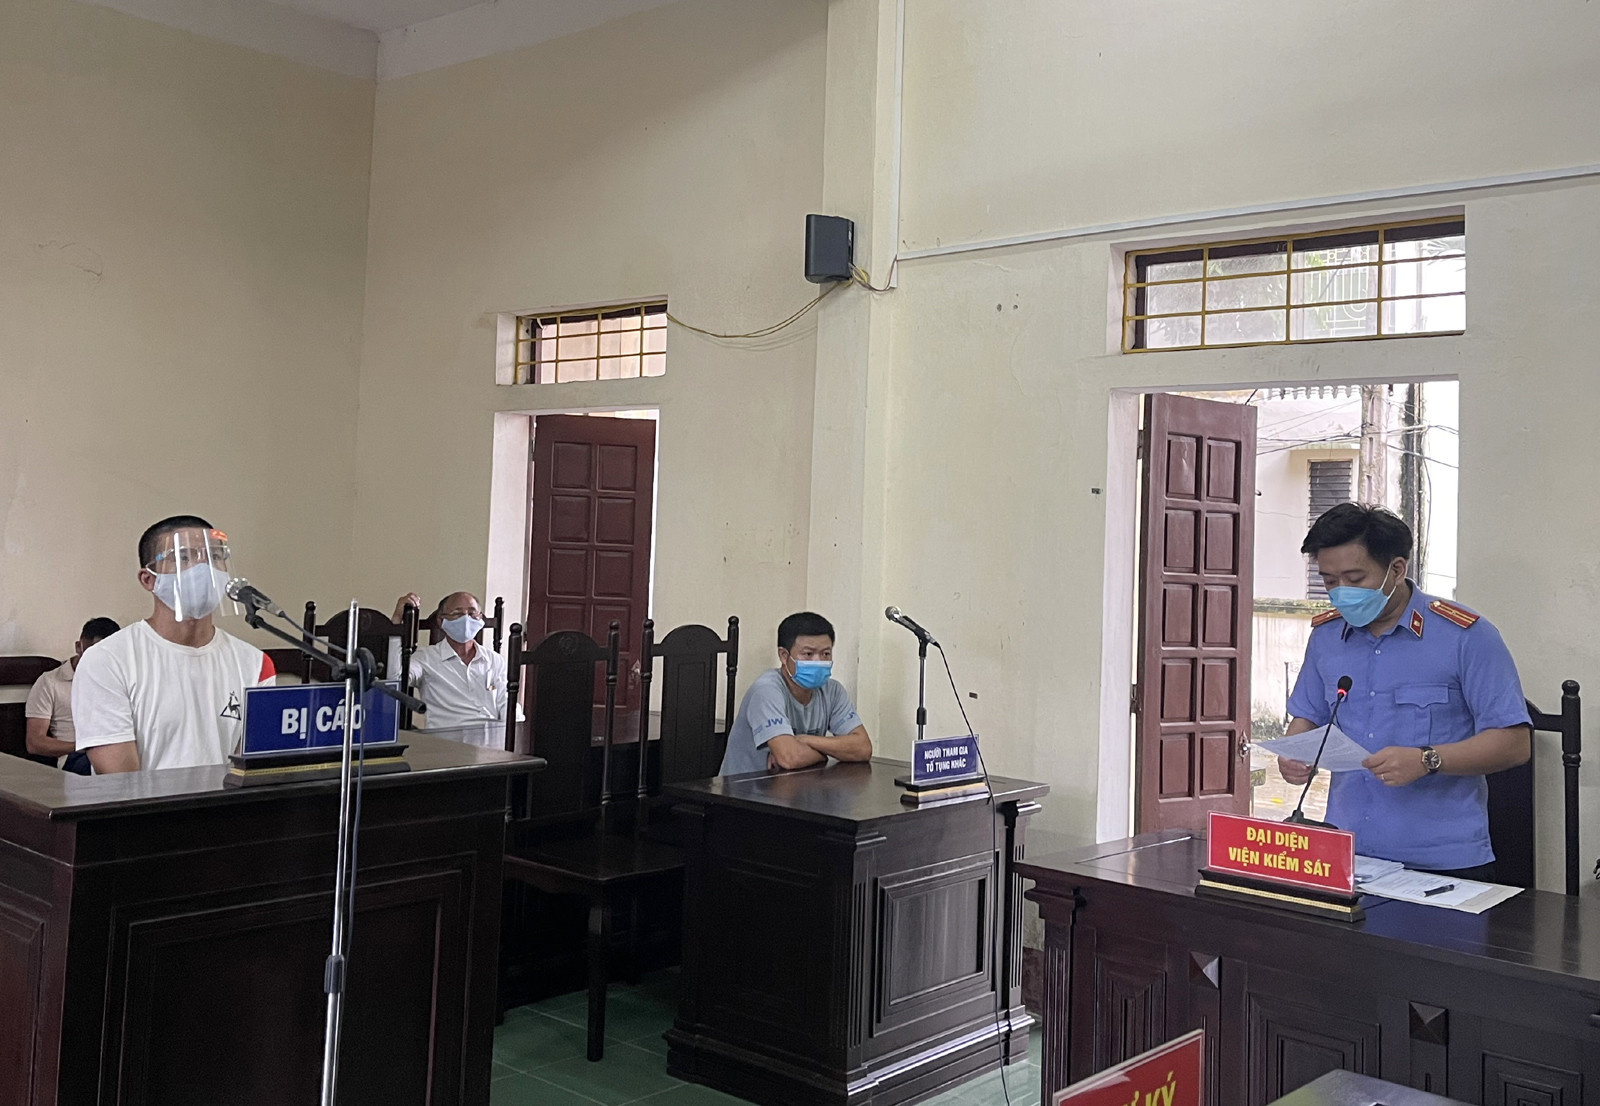 Nguyễn Văn Bắc lĩnh 15 tháng tù vì hành vi chống người thi hành công vụ.